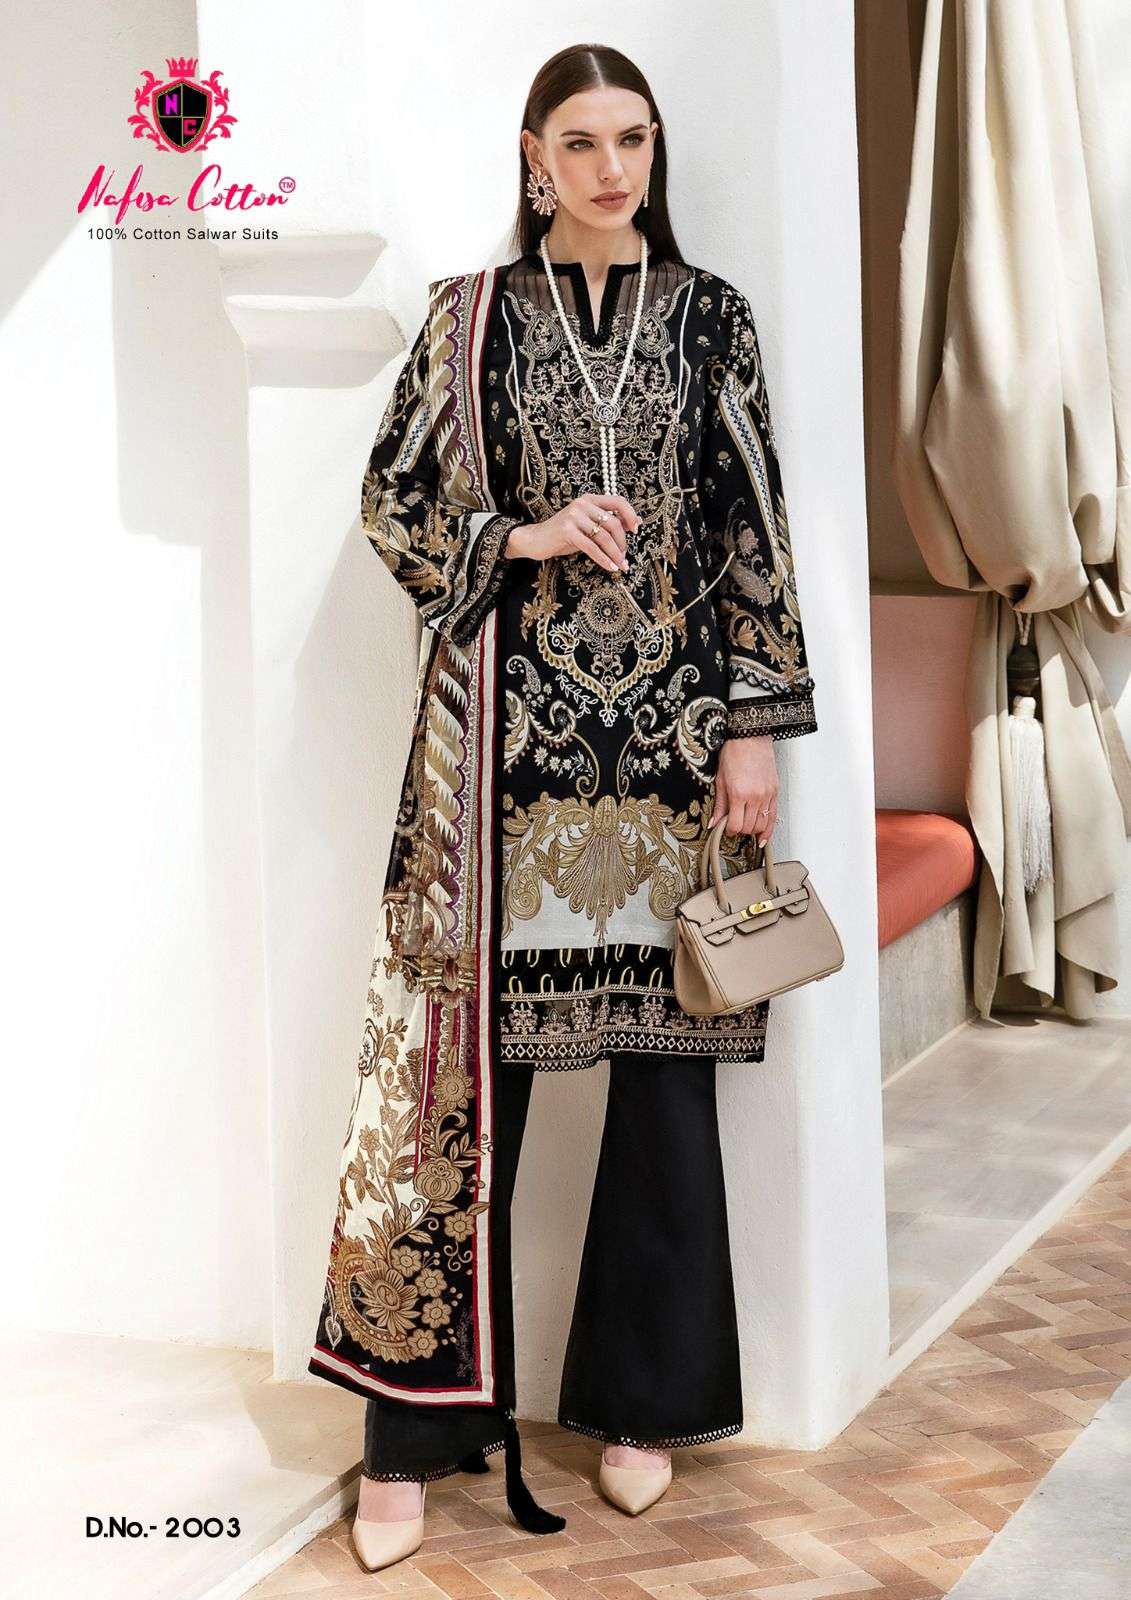 nafisa cotton safina karachi suits vol-2 2001-2006 series latest designe rpakistani suit wholesaler surat gujarat